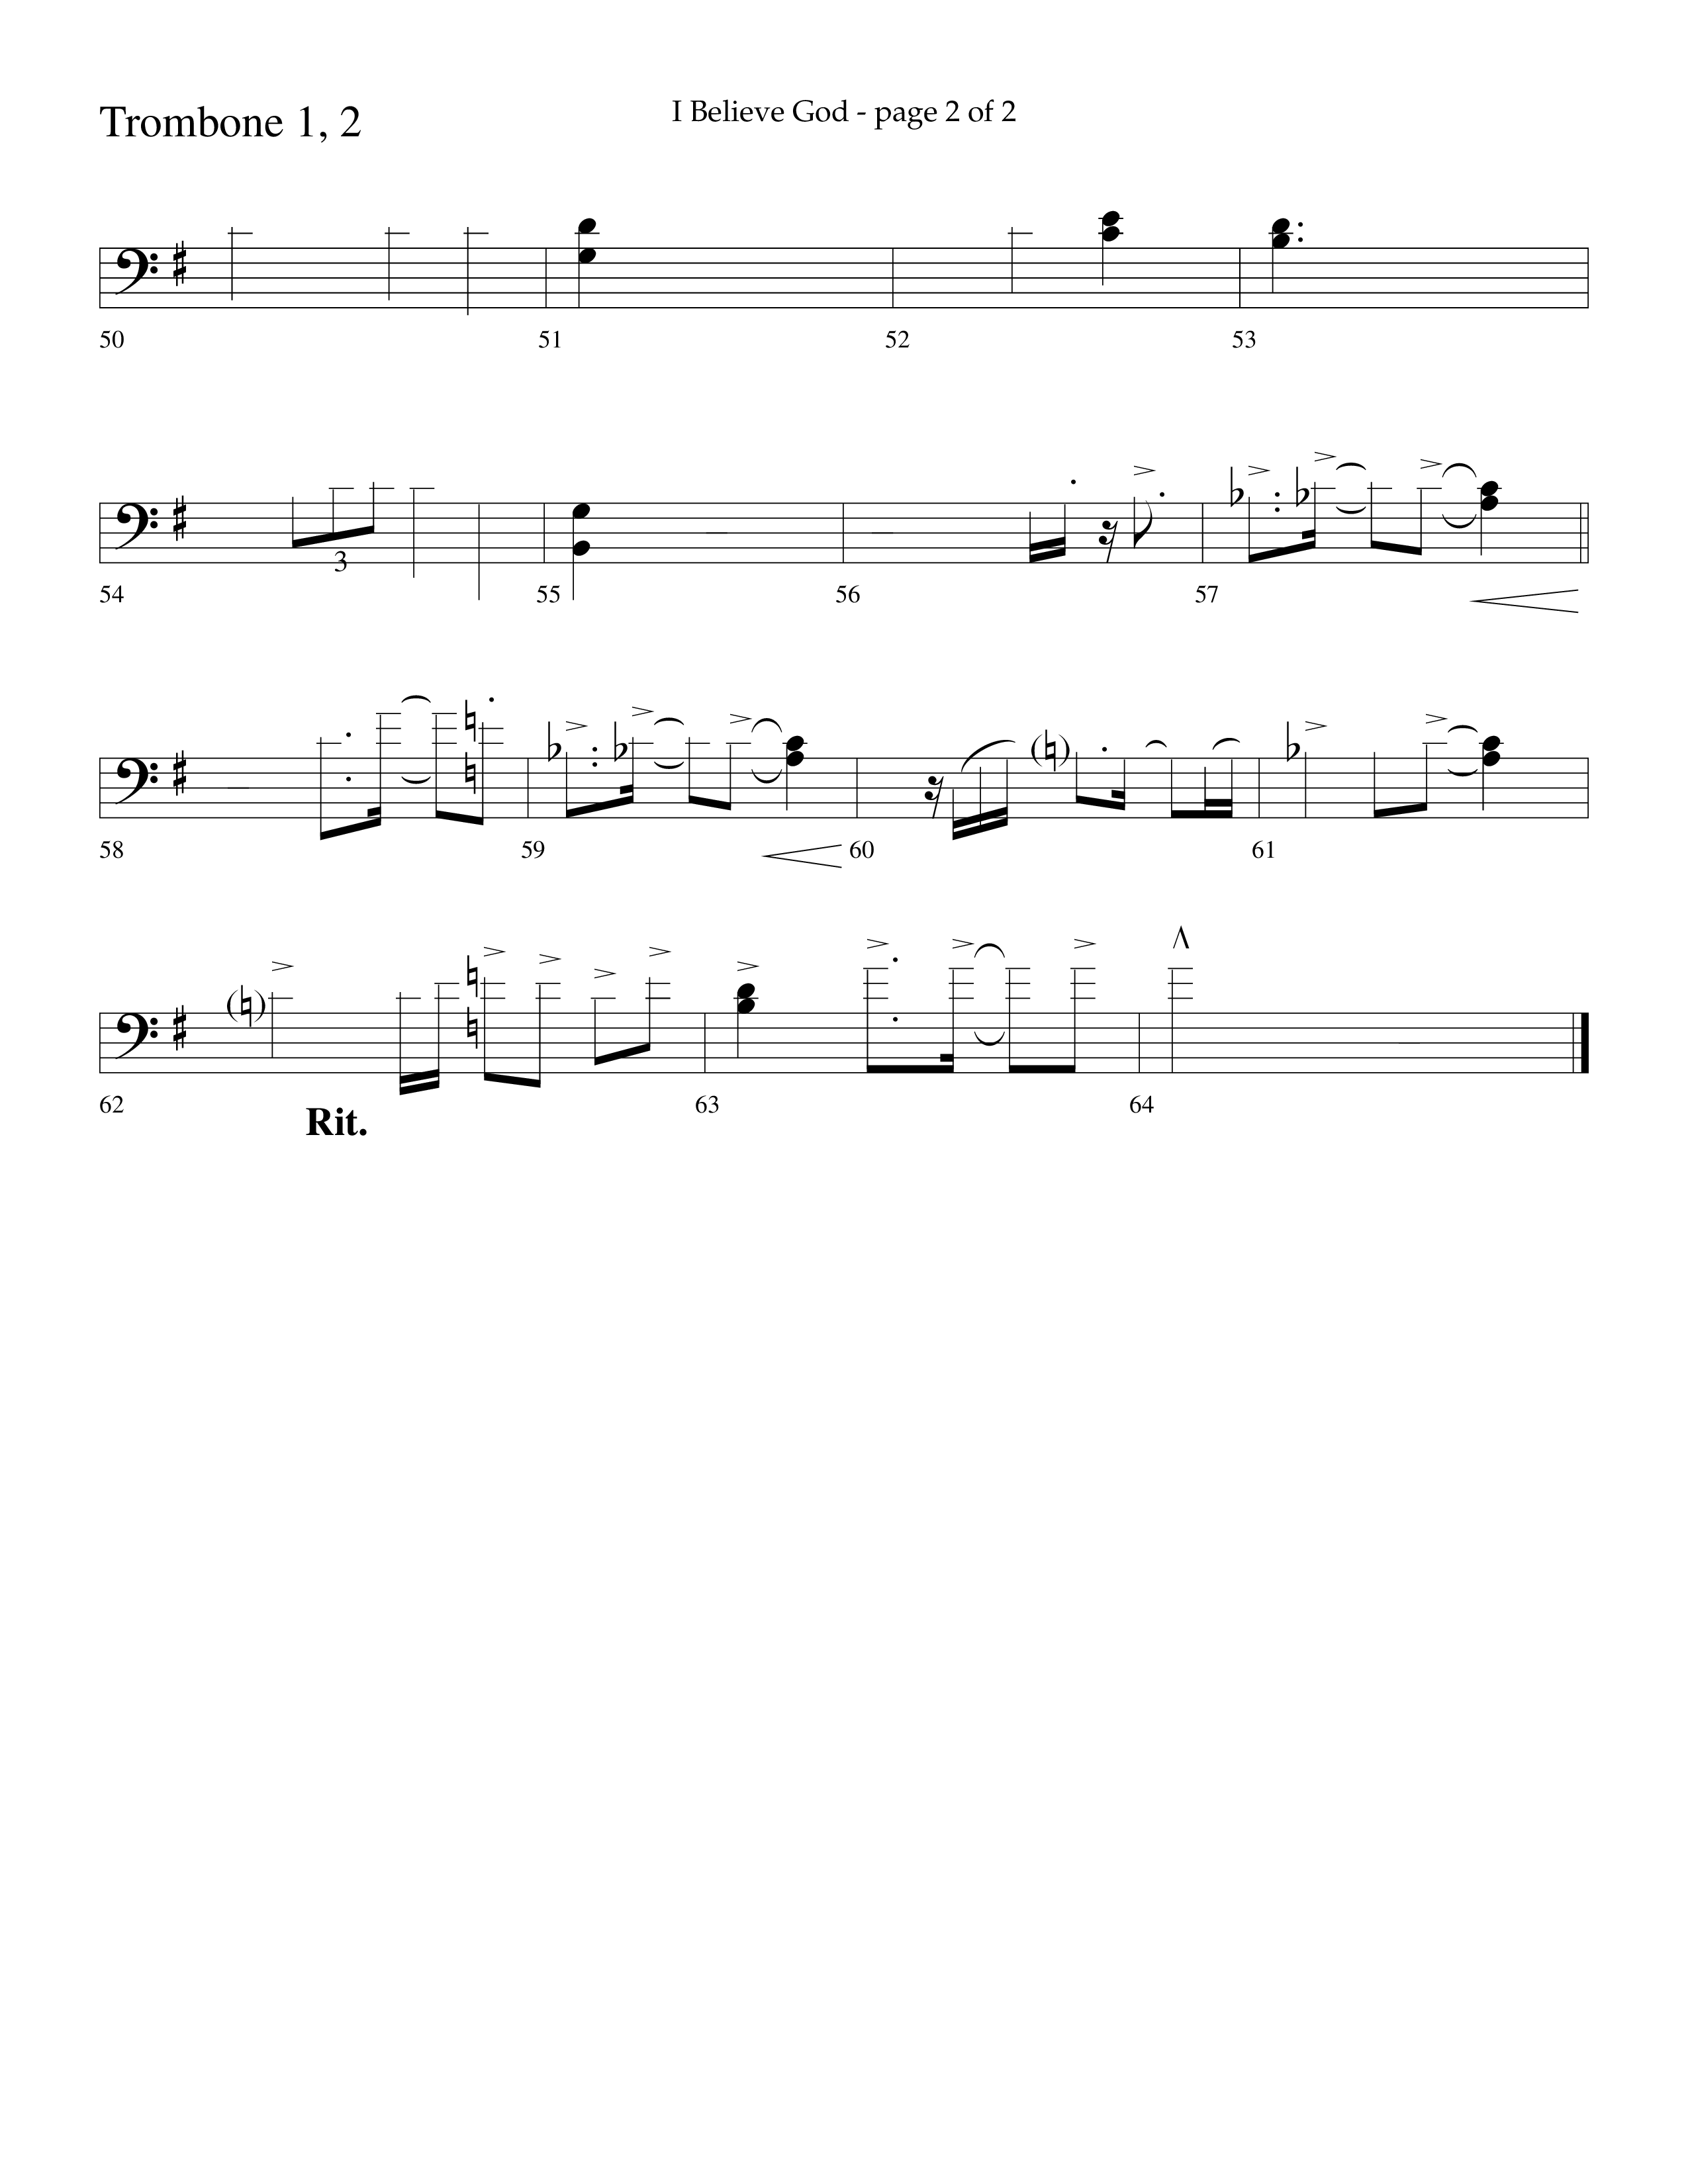 I Believe God (Choral Anthem SATB) Trombone 1/2 (Lifeway Choral / Arr. Cliff Duren)